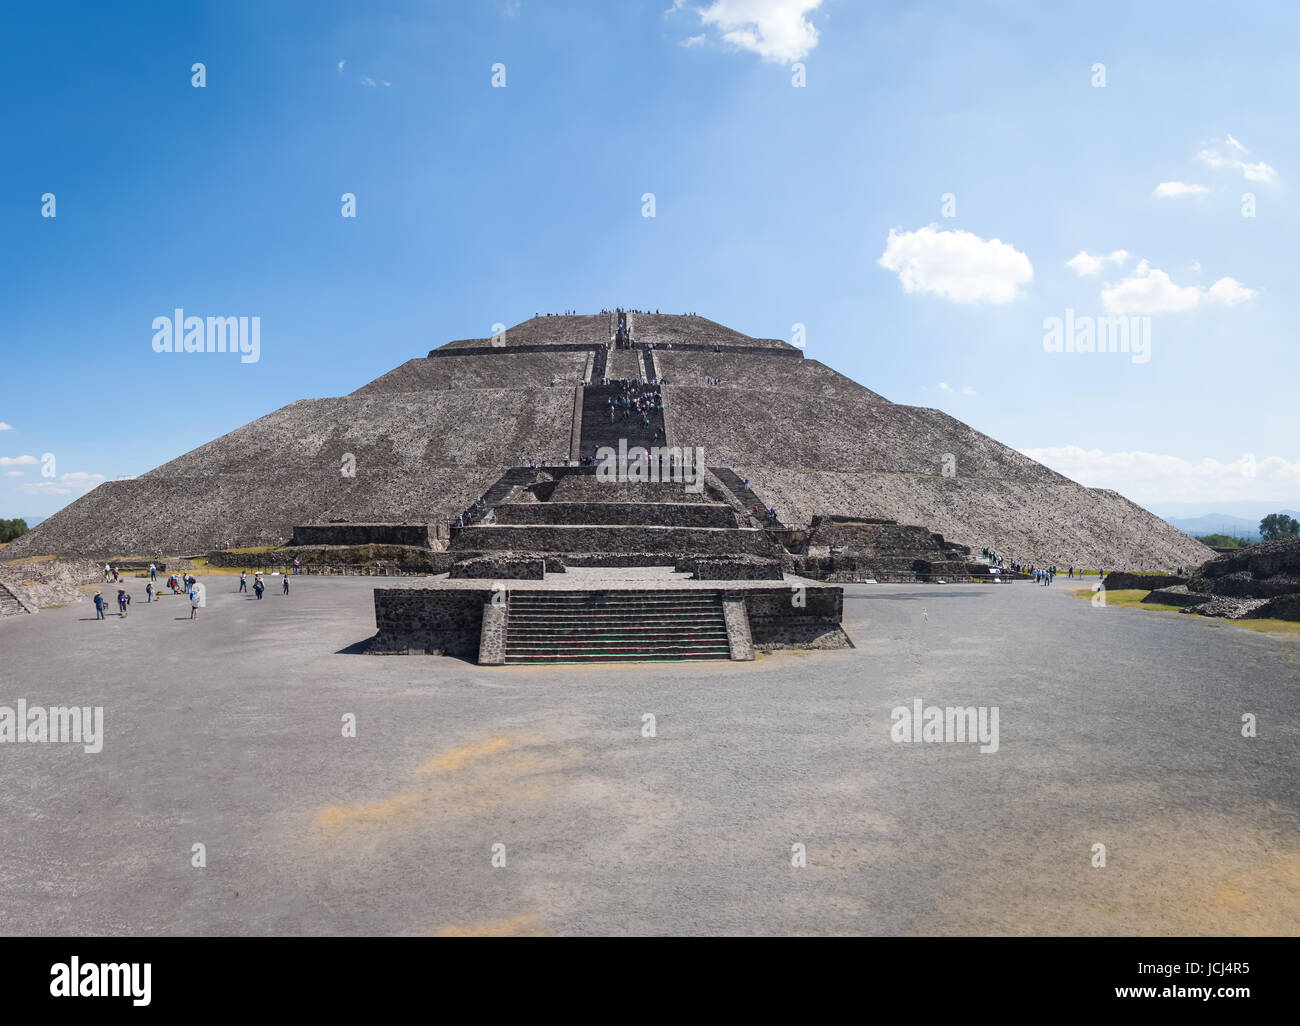 Vue frontale de la pyramide du Soleil à Teotihuacan - Mexico City, Mexique Banque D'Images